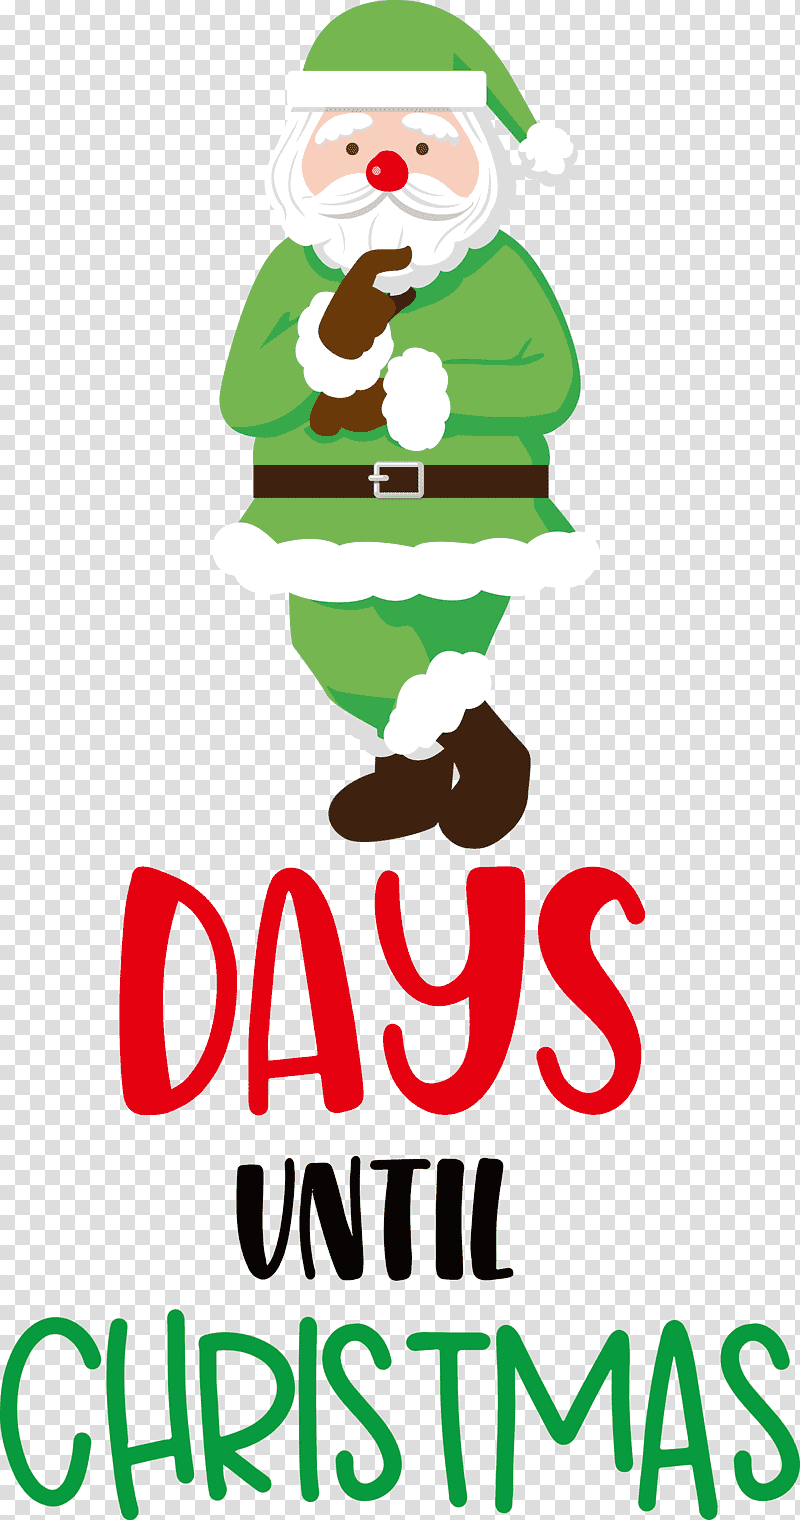 Days until Christmas Christmas Santa Claus, Christmas , Christmas Tree, Christmas Day, Logo, Christmas Ornament M, Santa Clausm transparent background PNG clipart